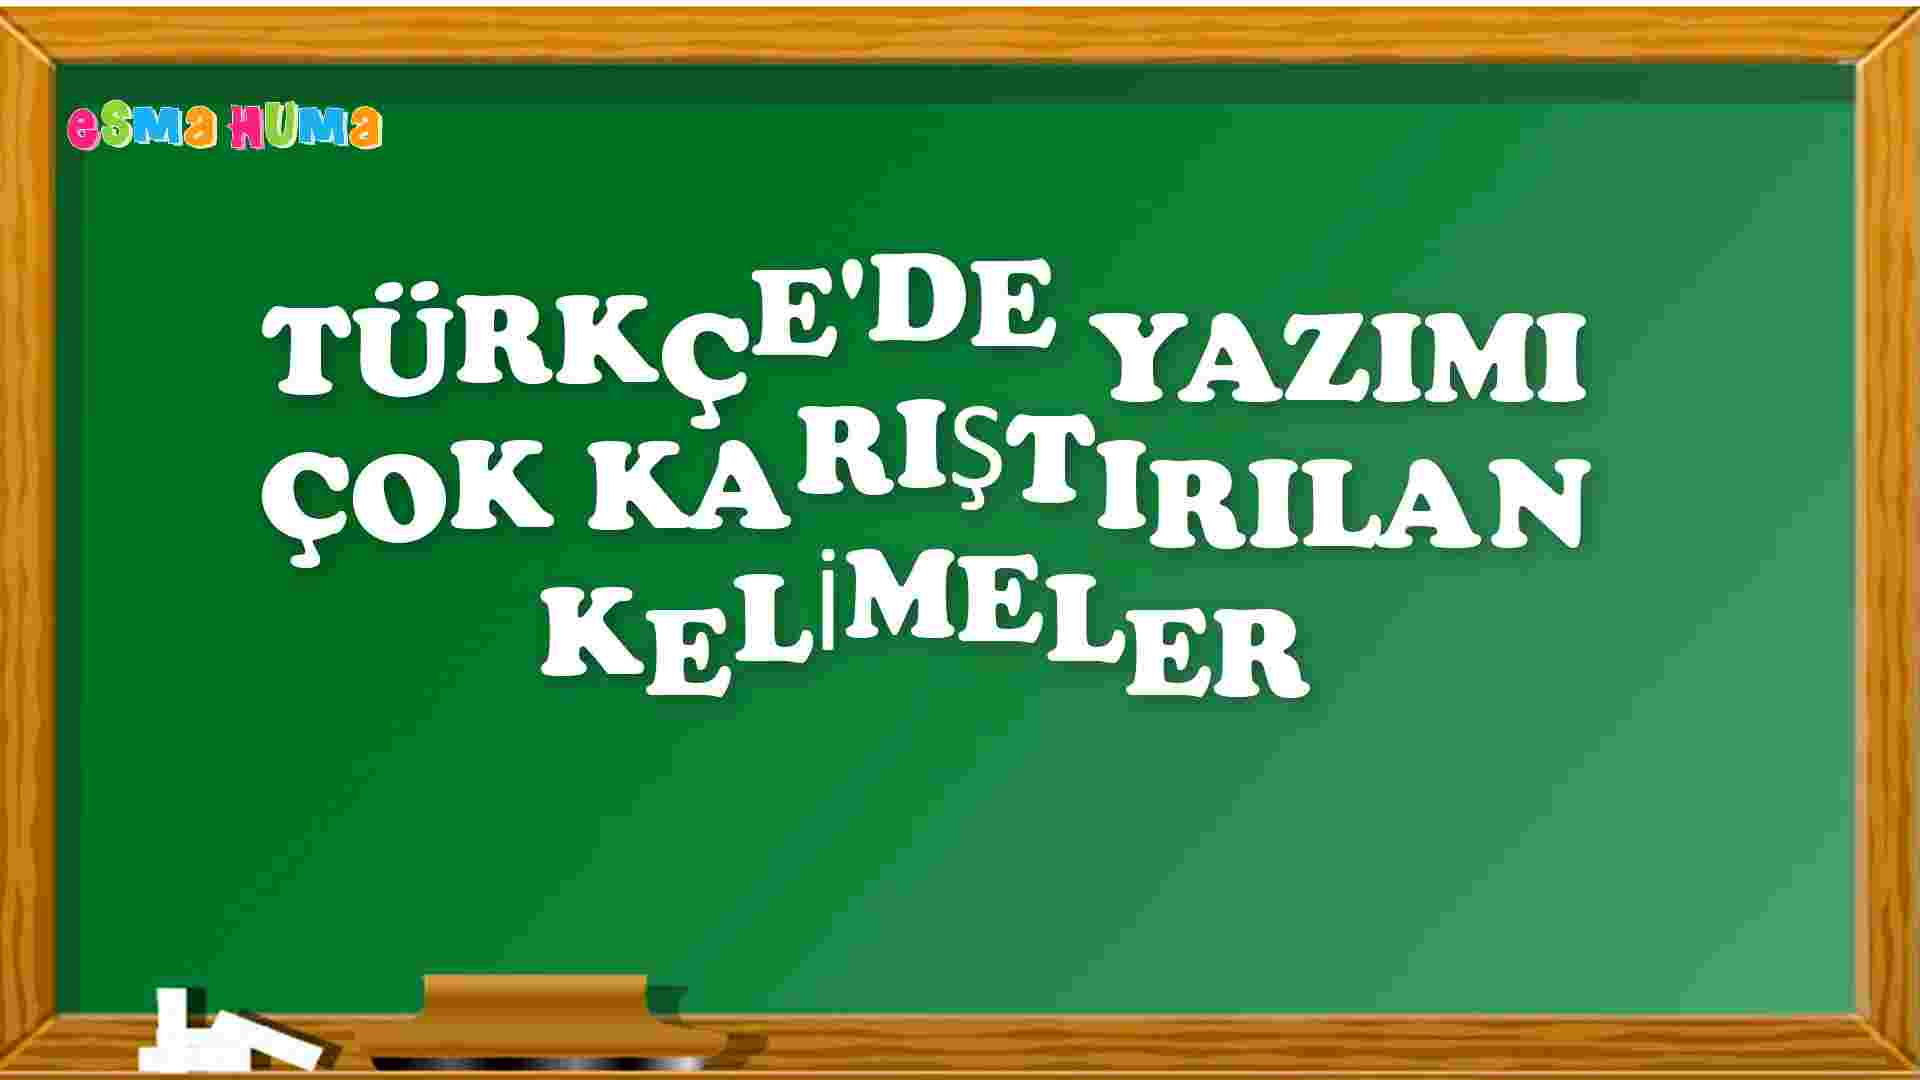 Türkçe'de Yazılışında ve Söyleyişinde Hata Yapılan Kelimeler